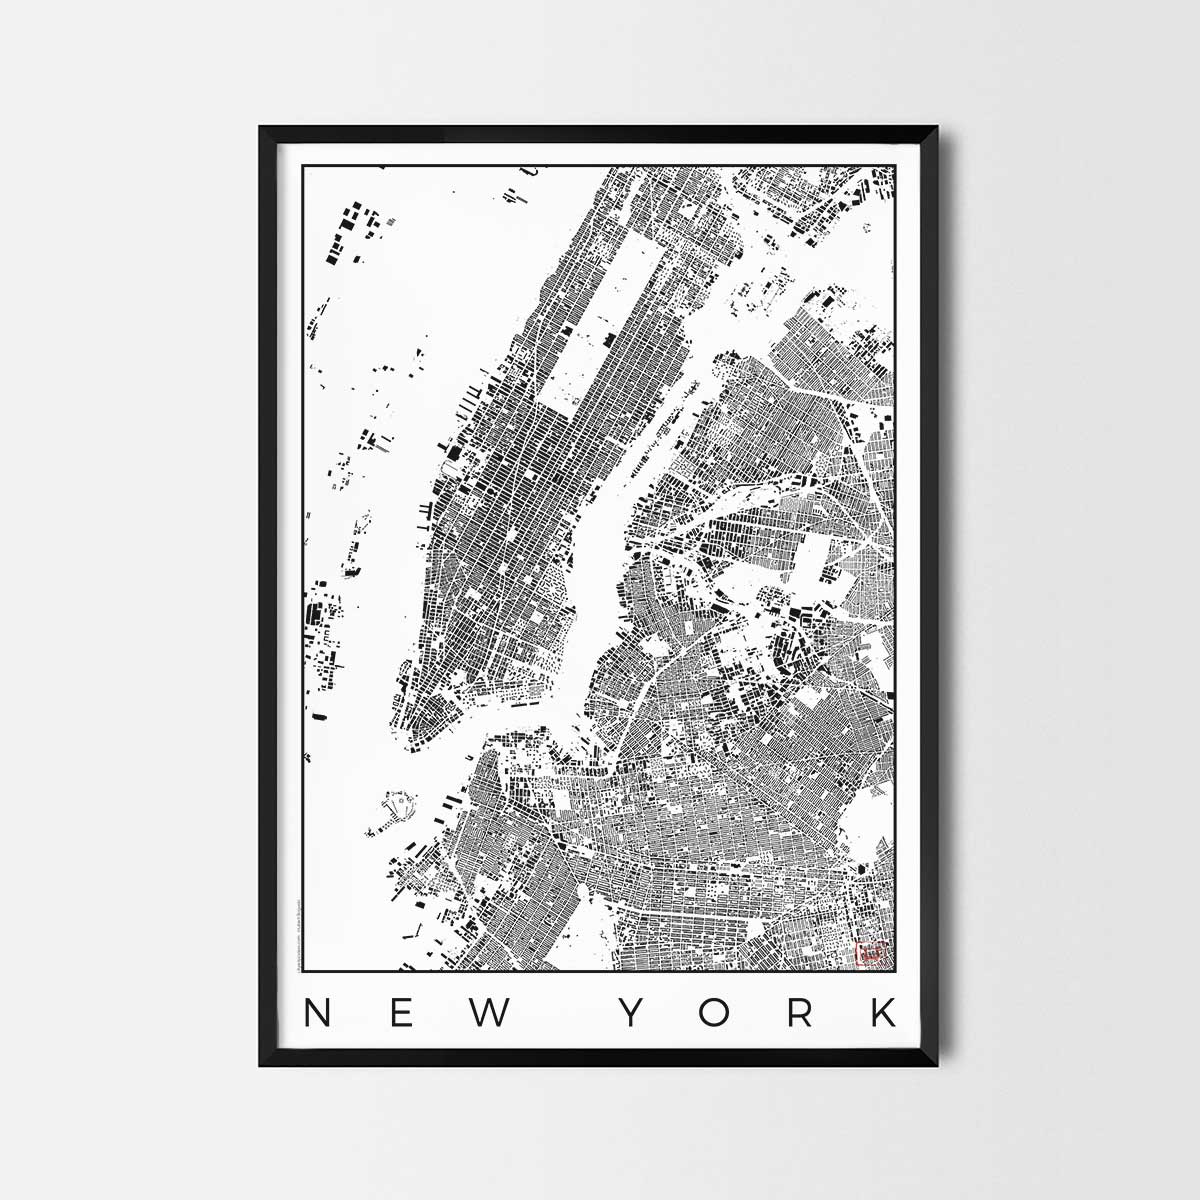 New York Map Poster schwarzplan Urban plan city map art posters map posters city art prints city posters